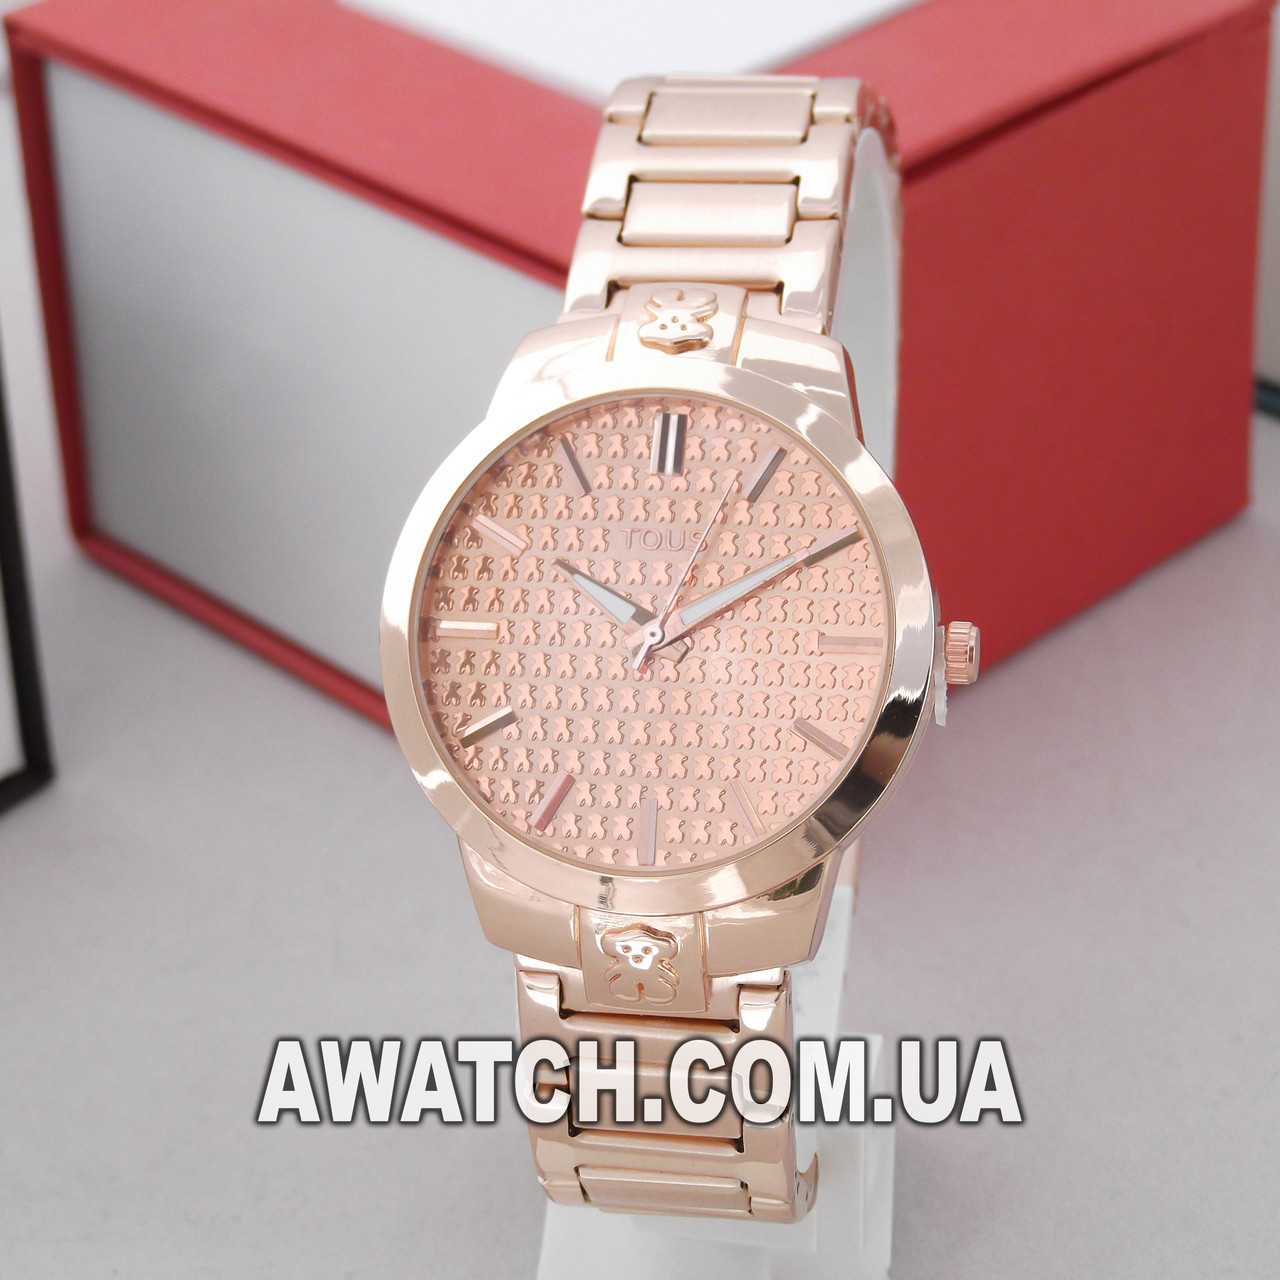 

Женские кварцевые наручные часы Tous M298 / Тоус на металлическом браслете бронзового цвета